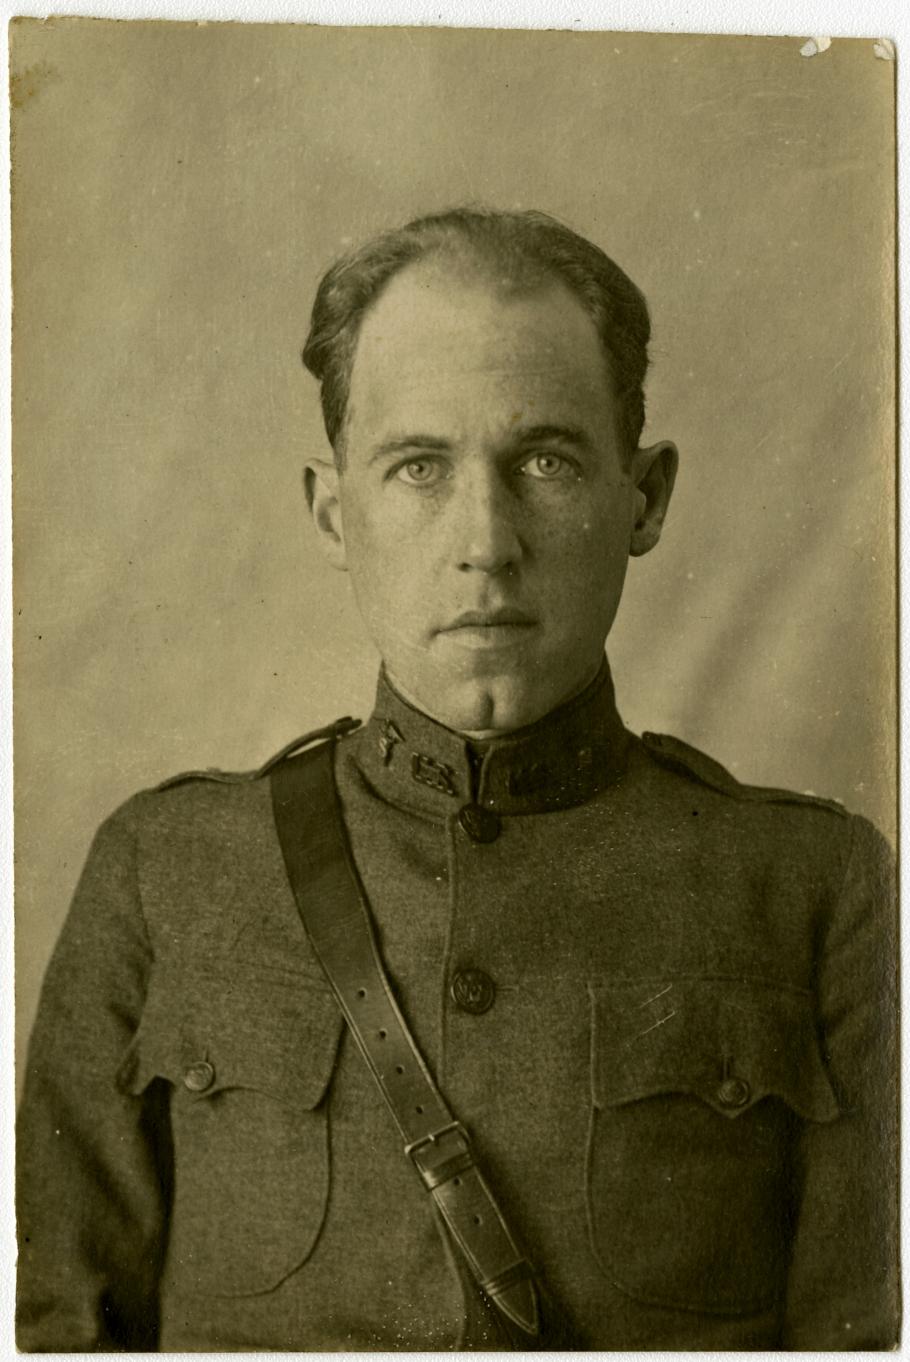 Portrait of Harold F. Pierce, in uniform